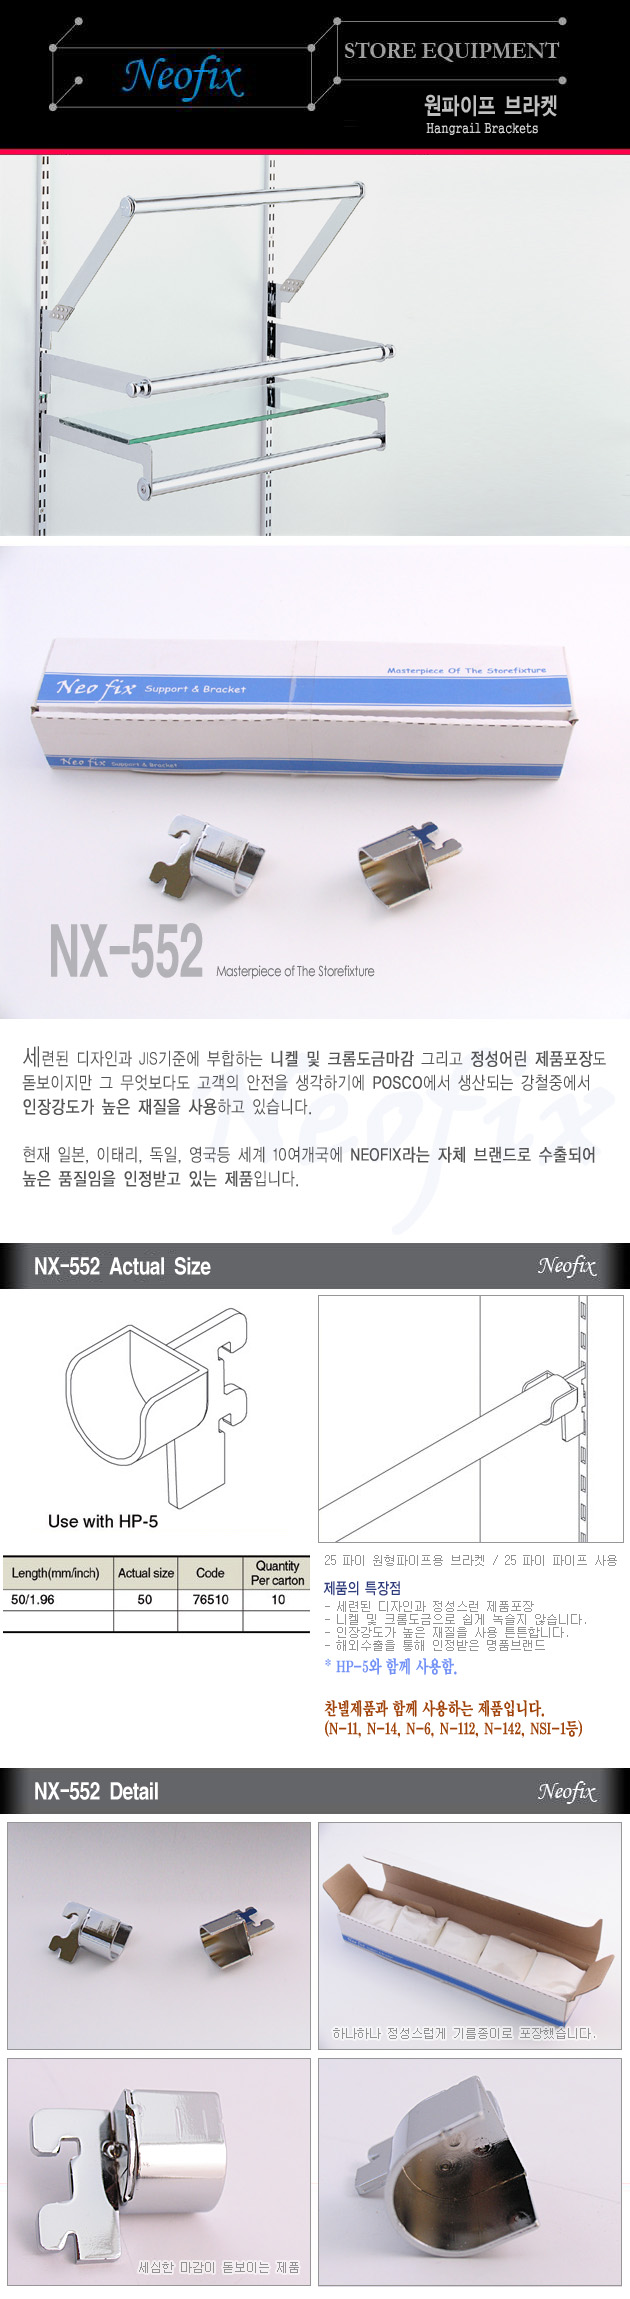 NX-552